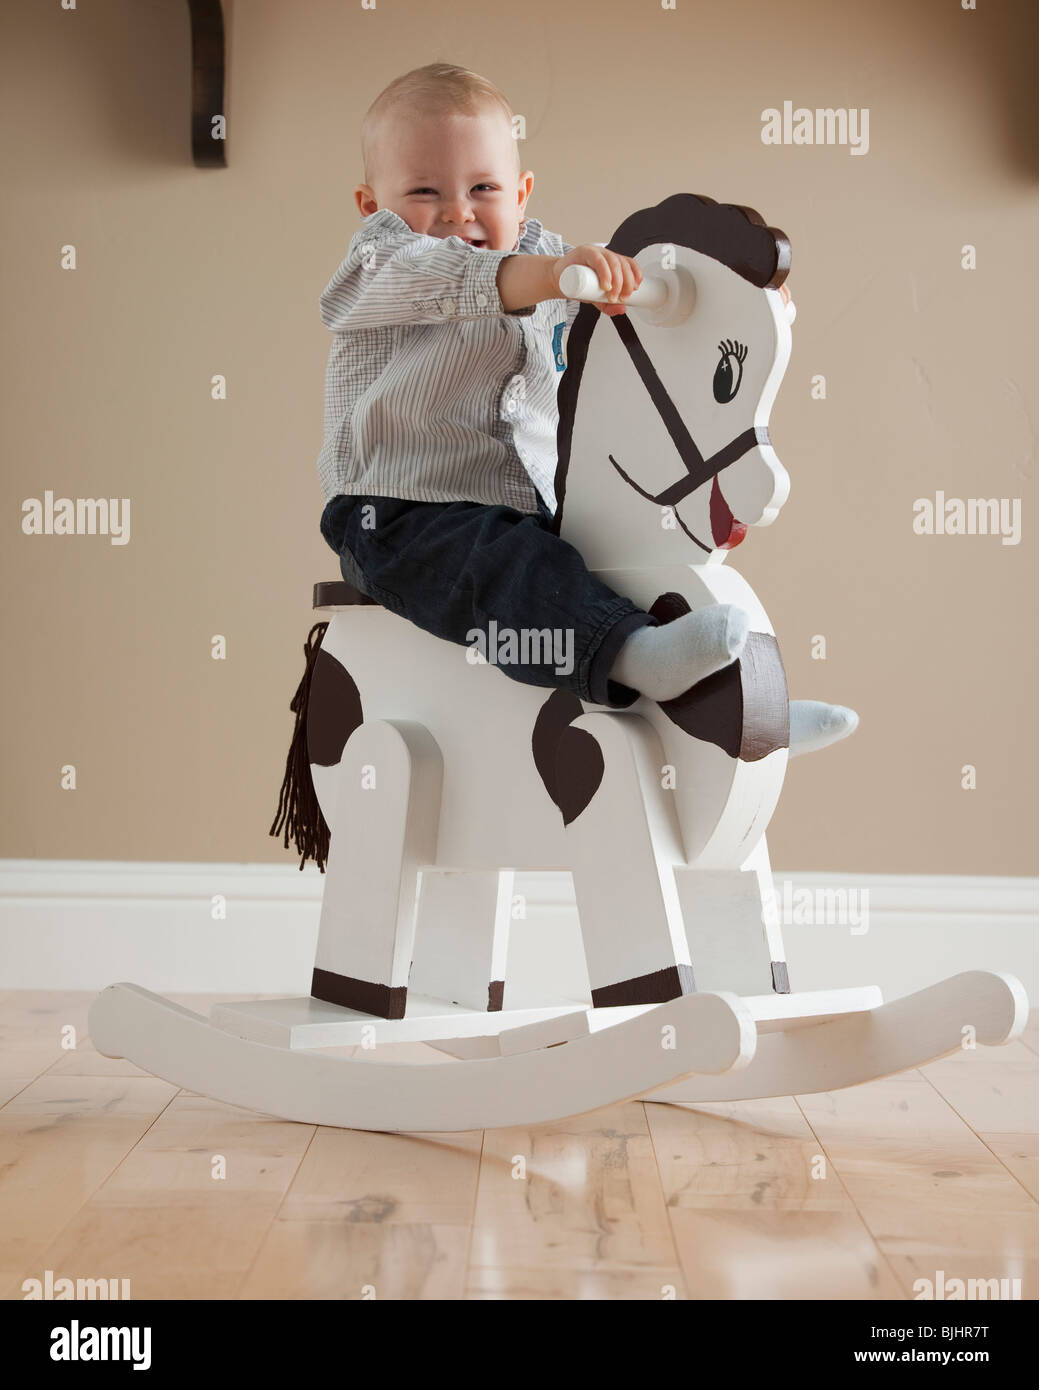 baby on rocking horse